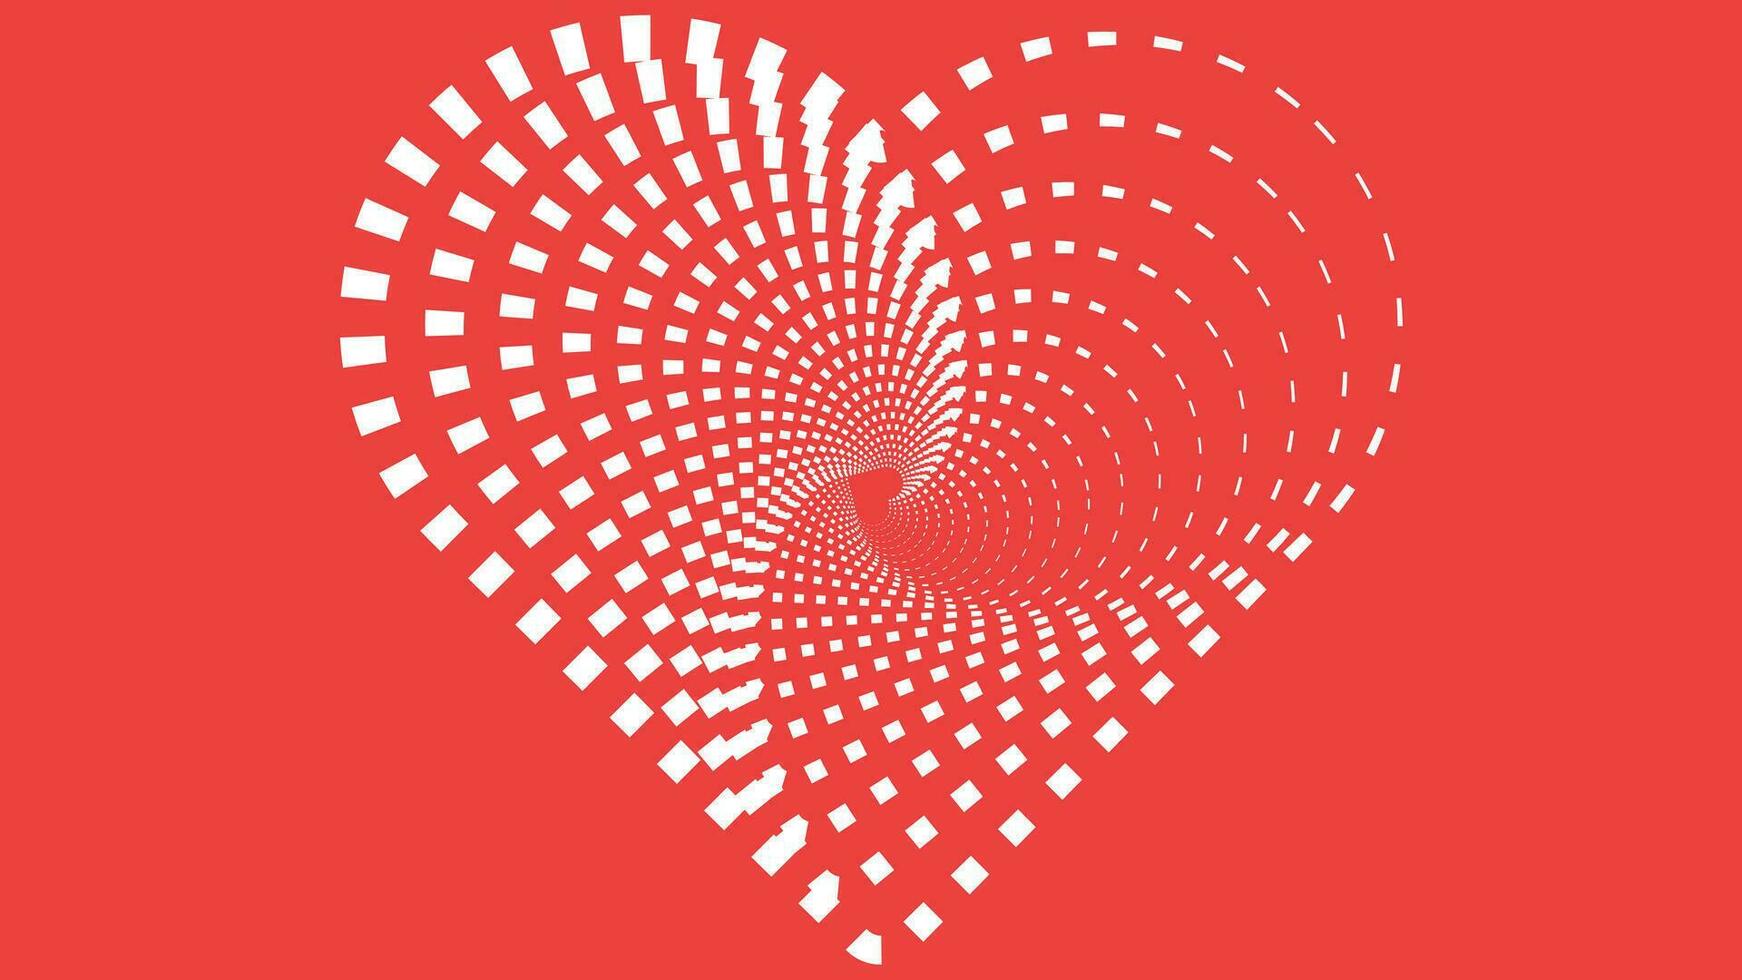 abstarct einfach minimalistisch Liebe Symbol rot Valentinstag Hintergrund. vektor